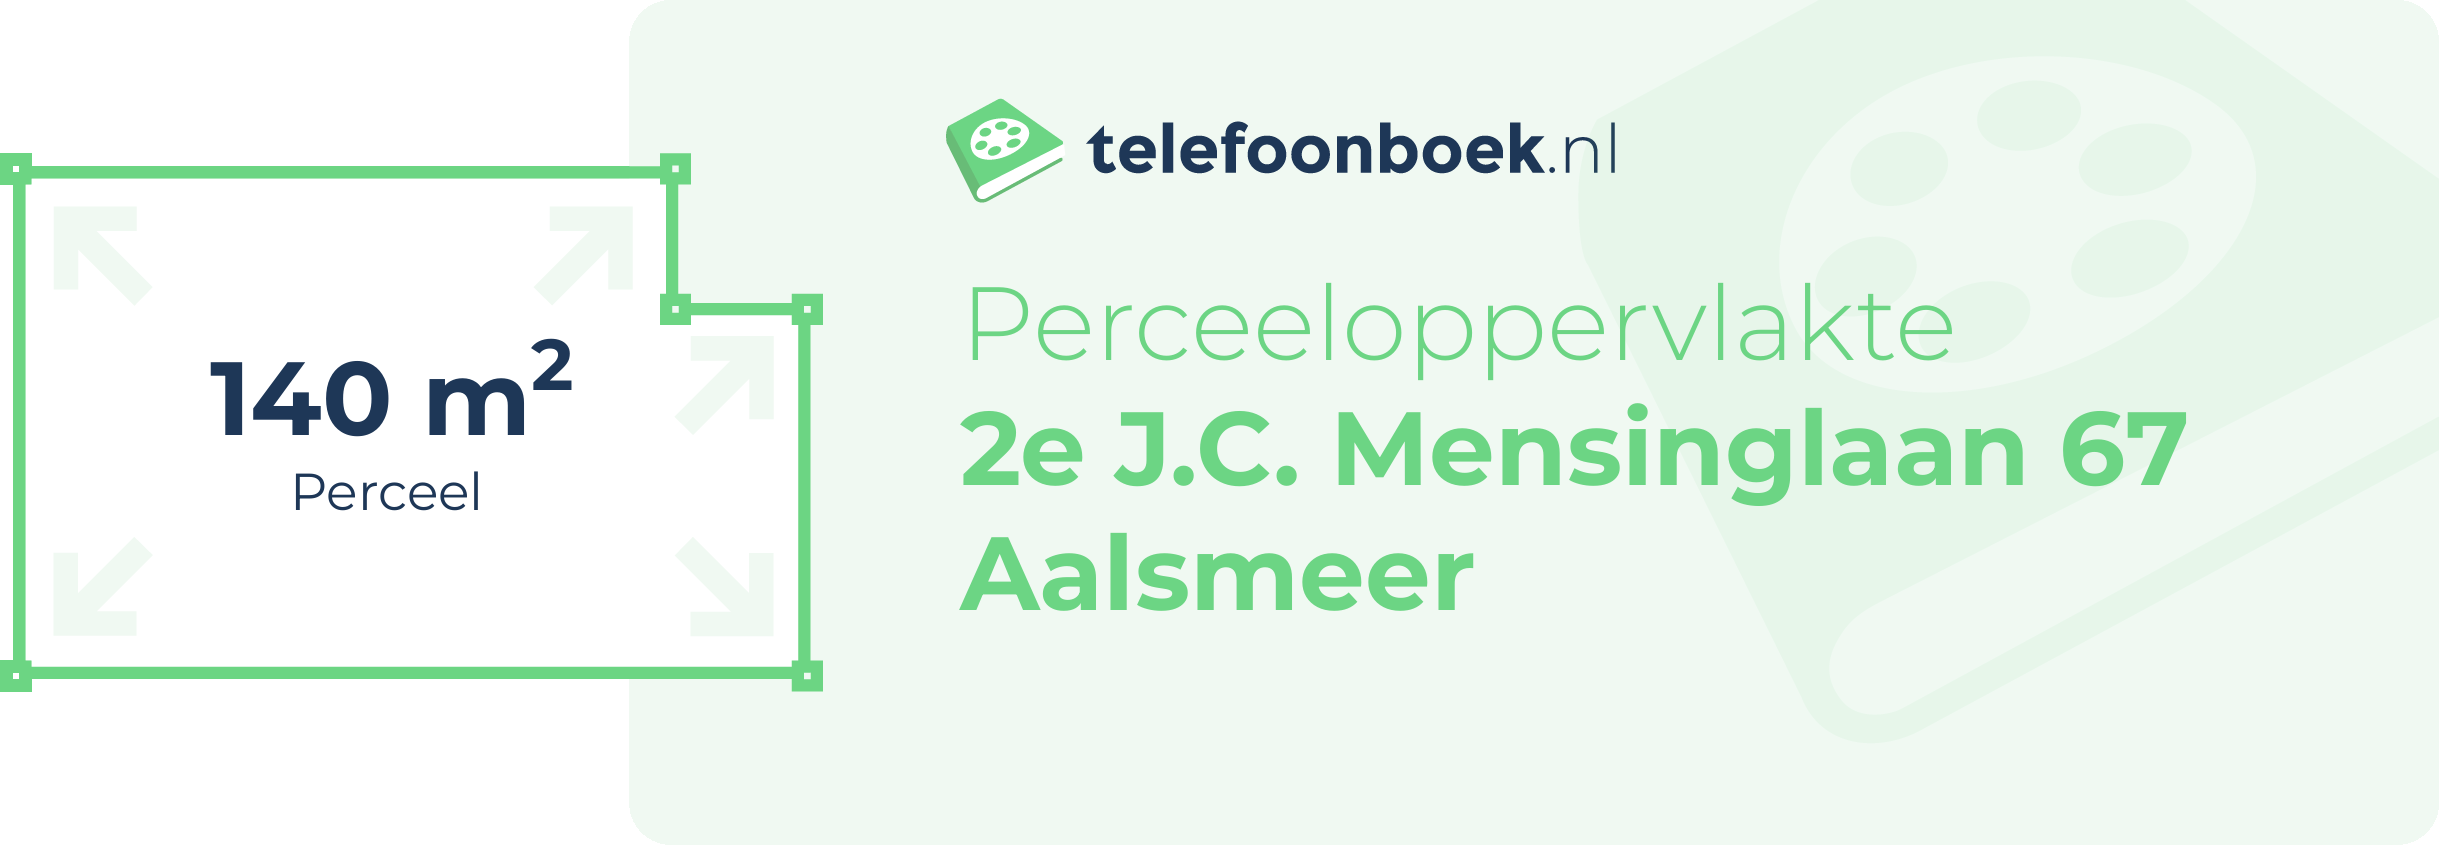 Perceeloppervlakte 2e J.C. Mensinglaan 67 Aalsmeer